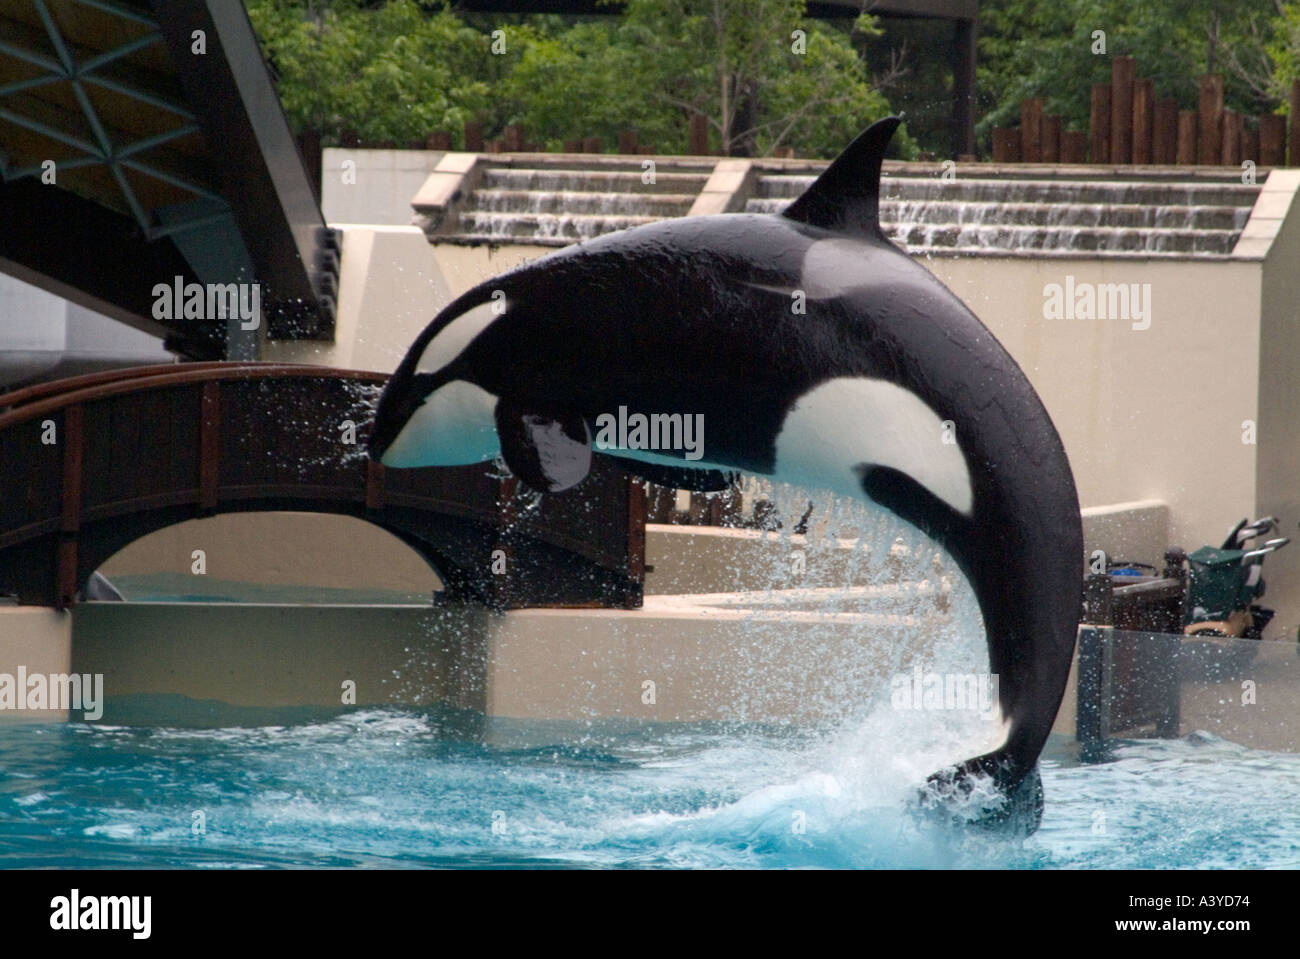 L'Orque sautant dans l'air à partir de la piscine au spectacle marin Marineland Niagara Falls Canada Amérique du Nord Banque D'Images